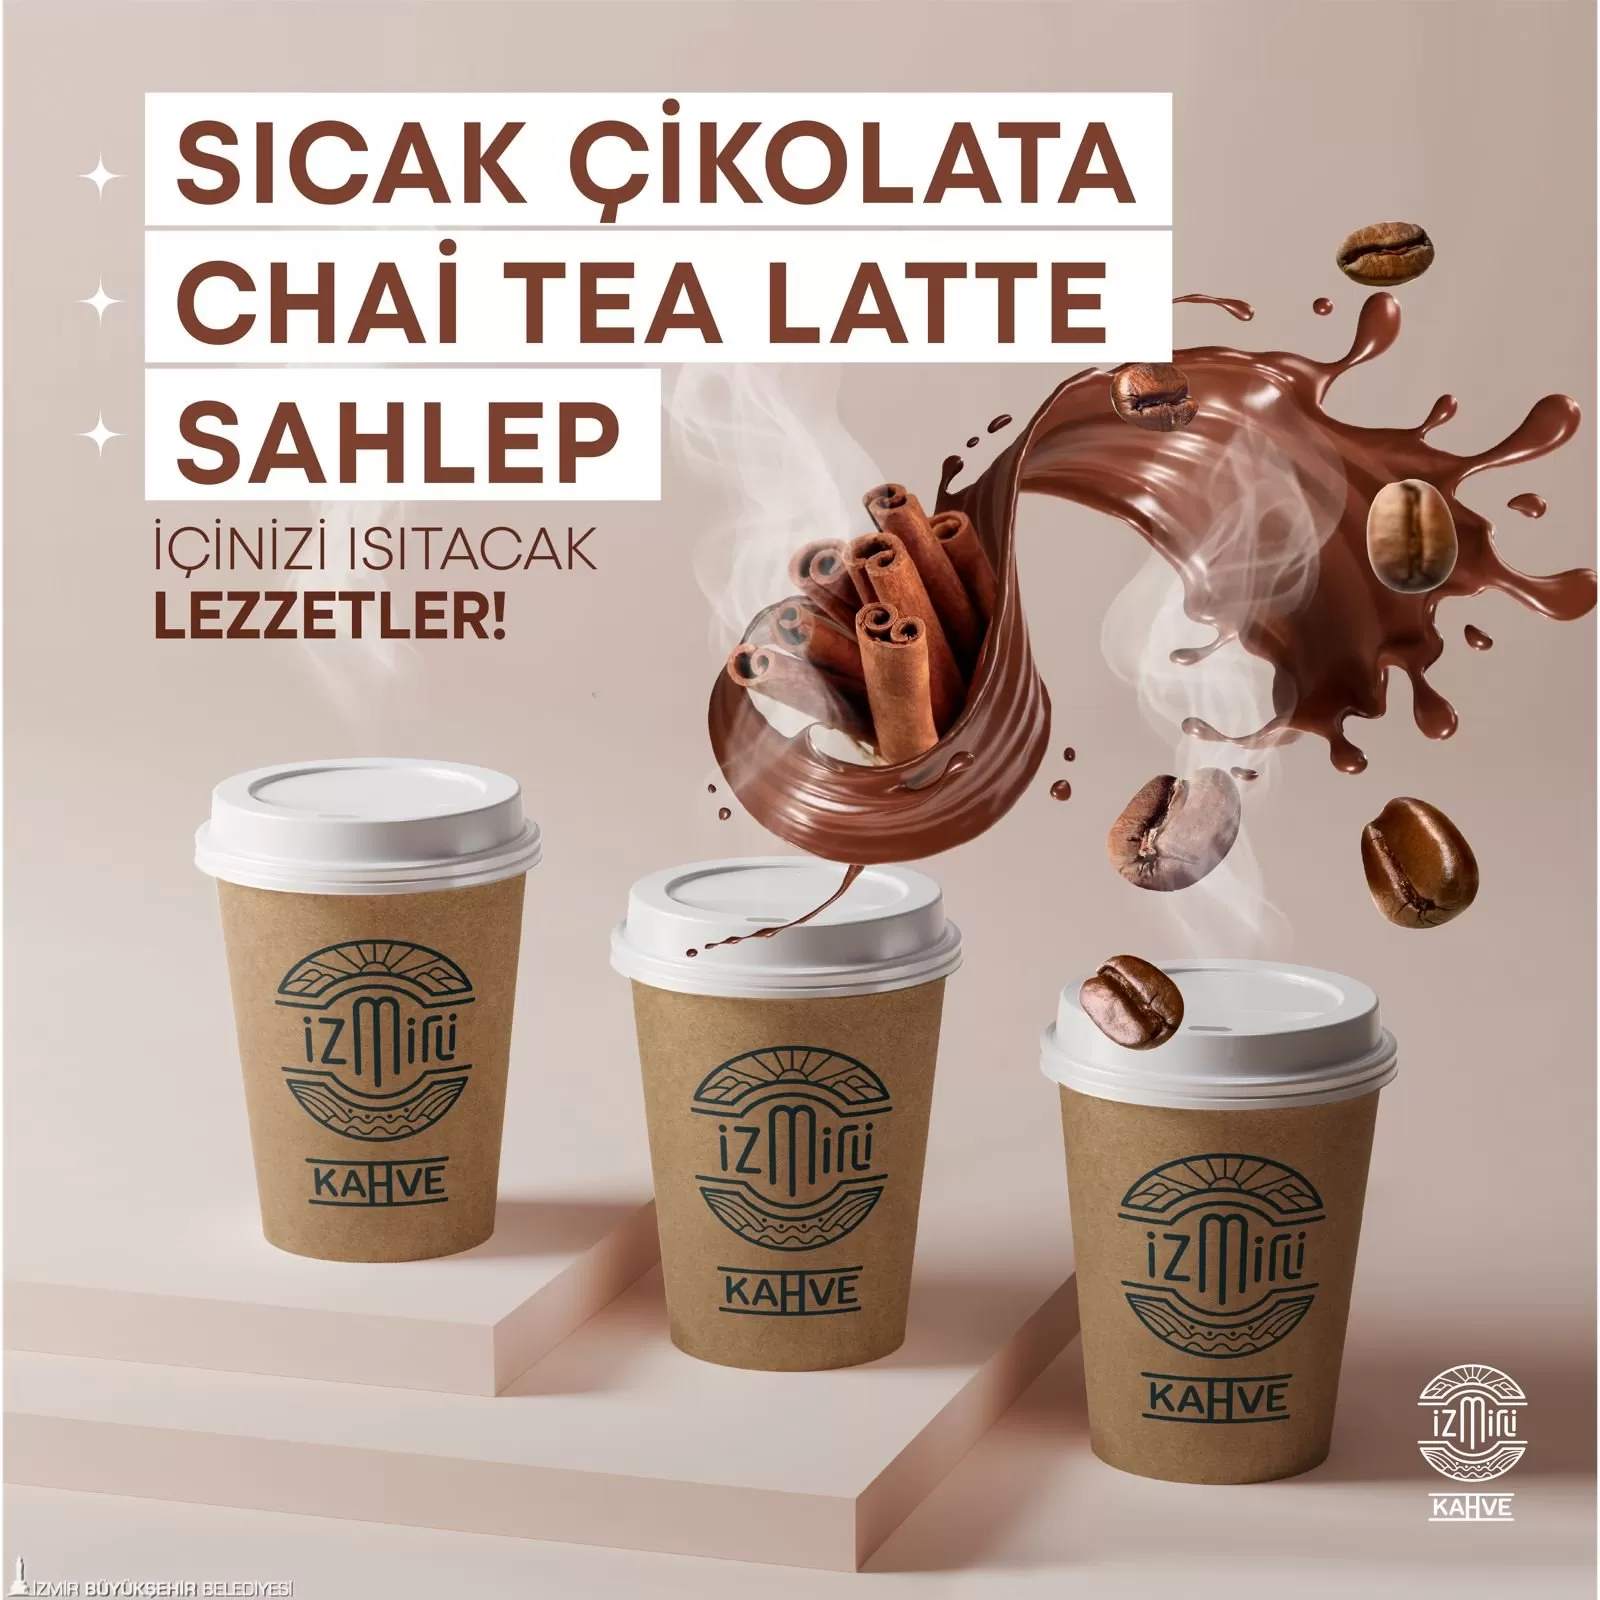 İzmir Büyükşehir Belediyesi'nin gençlere yönelik olarak açtığı İzmirli Kahve, kış aylarının sevilen içecekleri olan chai tea latte, salep ve sıcak çikolatayı menüsüne ekledi.